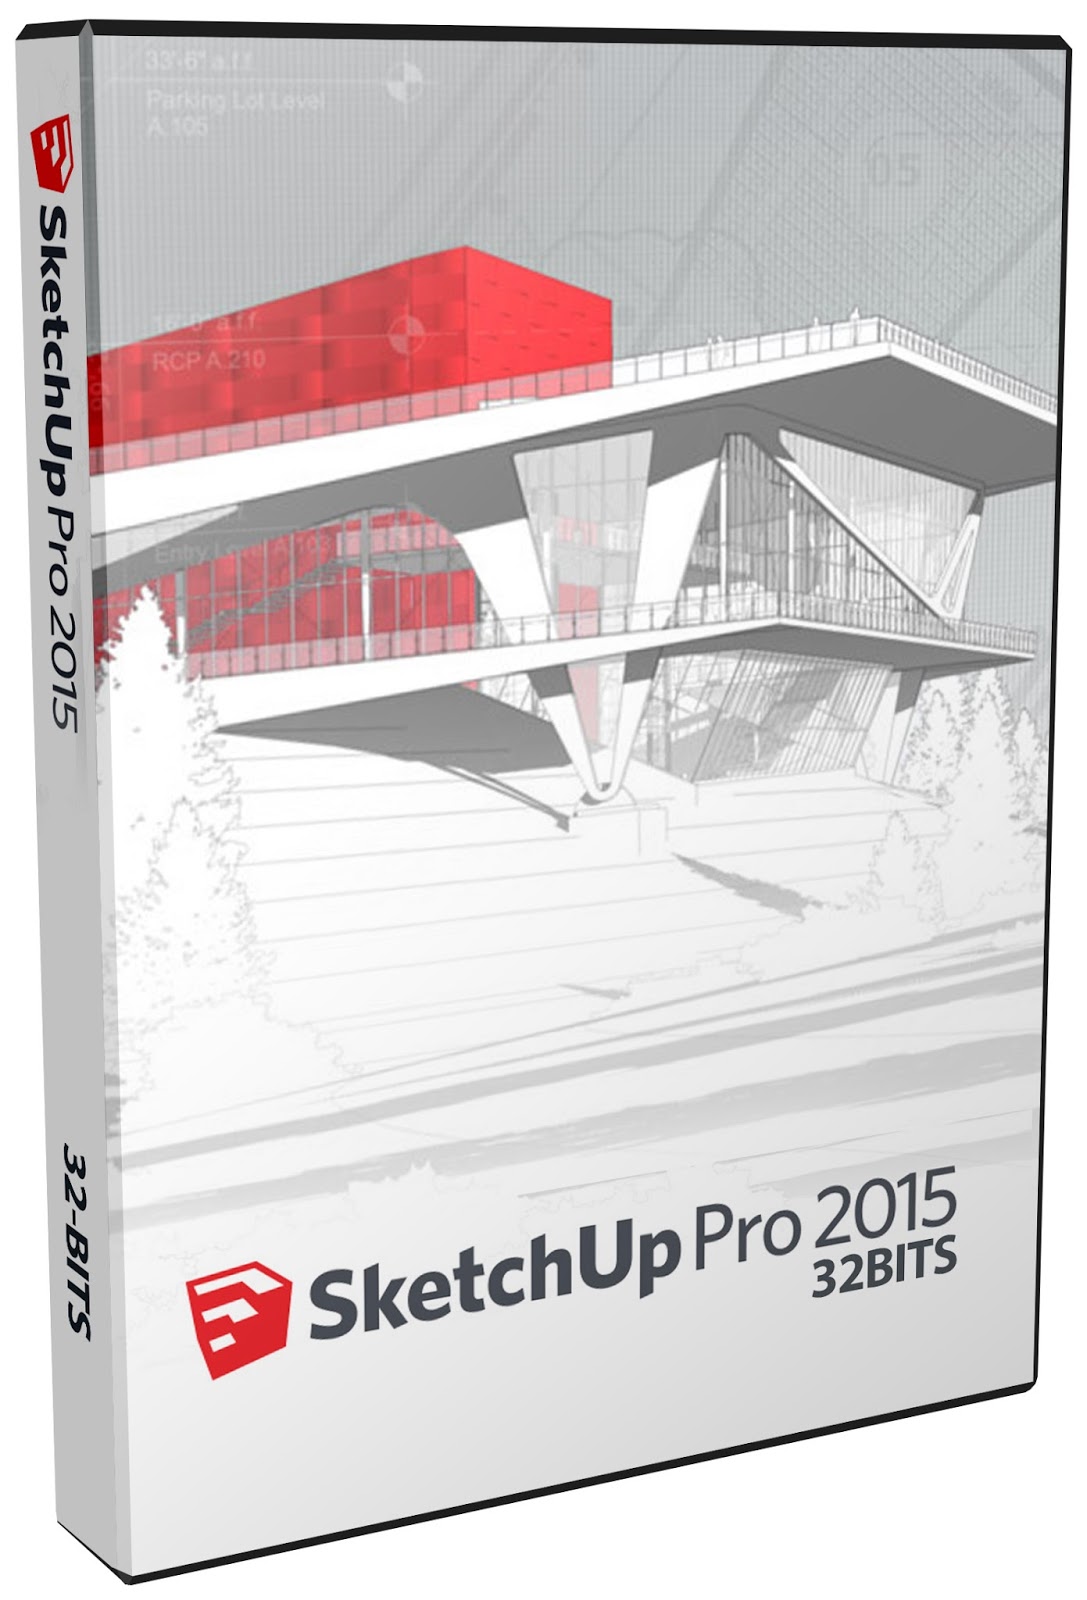 sketchup pro 2015 free